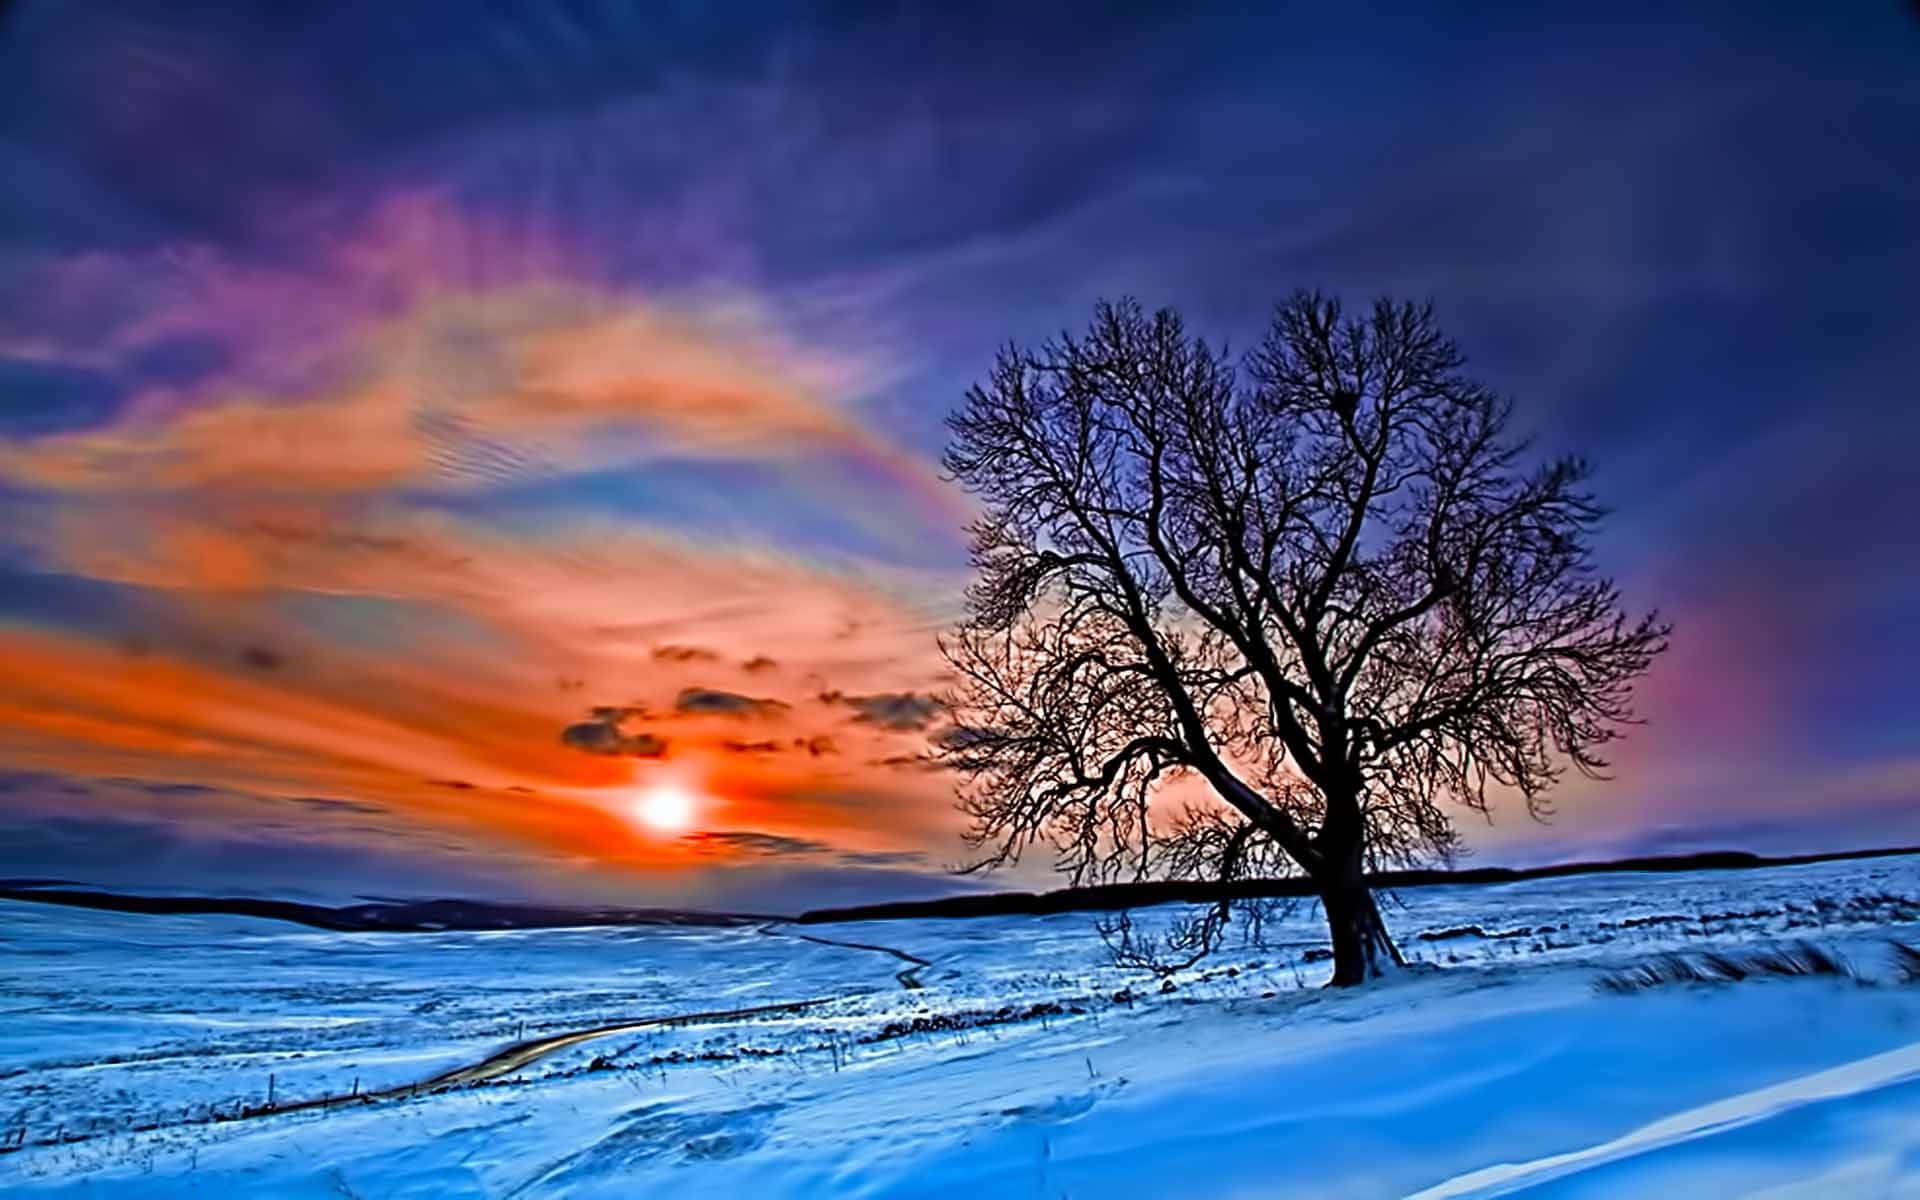 A Magical Winter Sunset Wallpaper